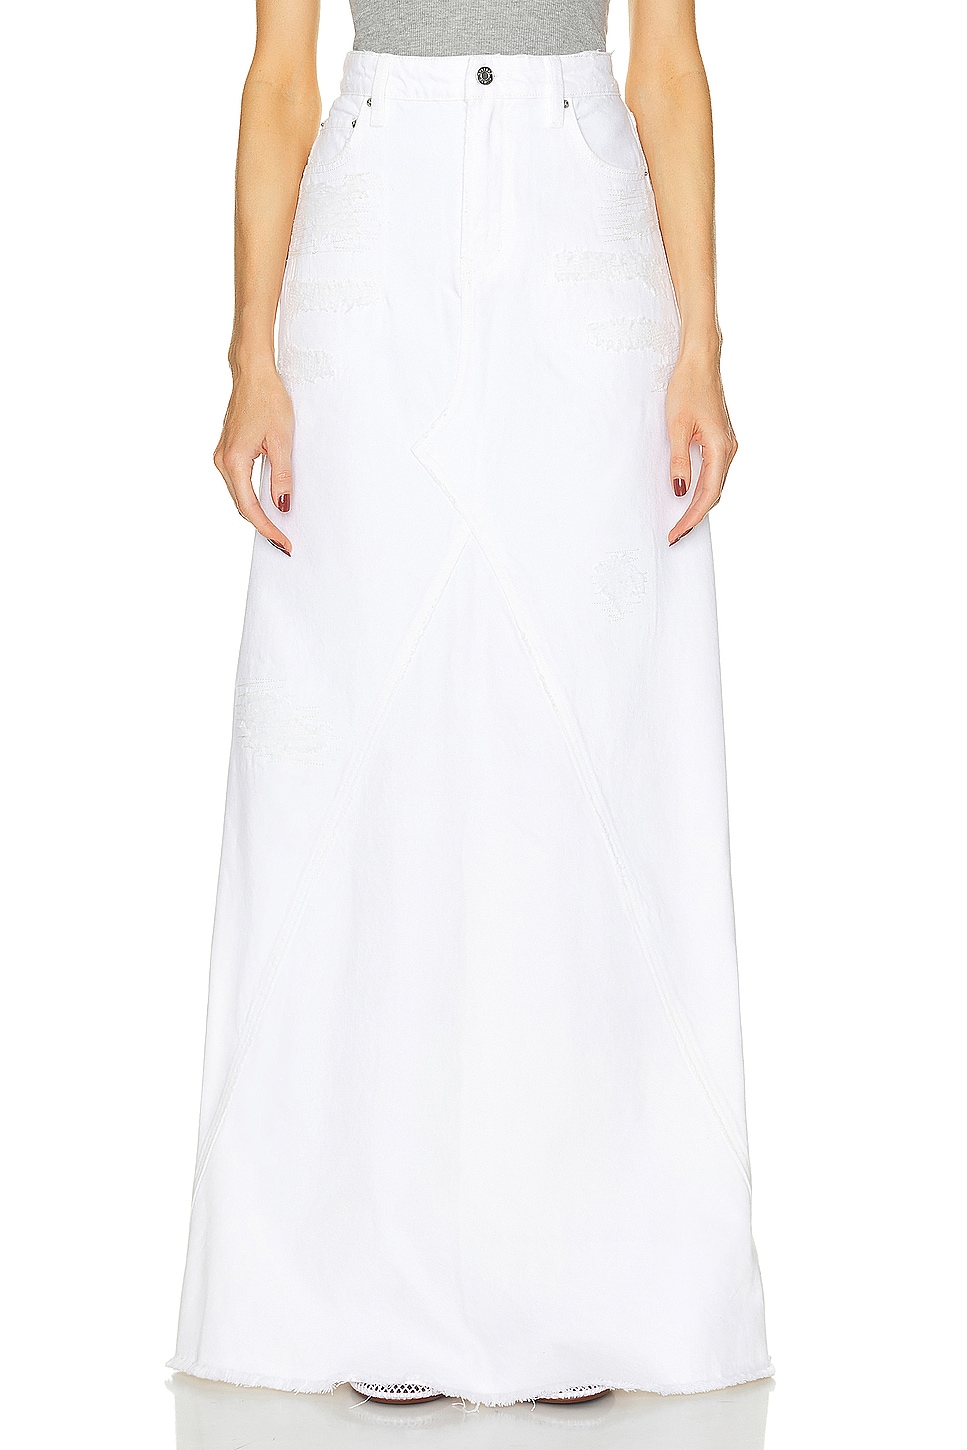 Fiona Godet Maxi Skirt in White